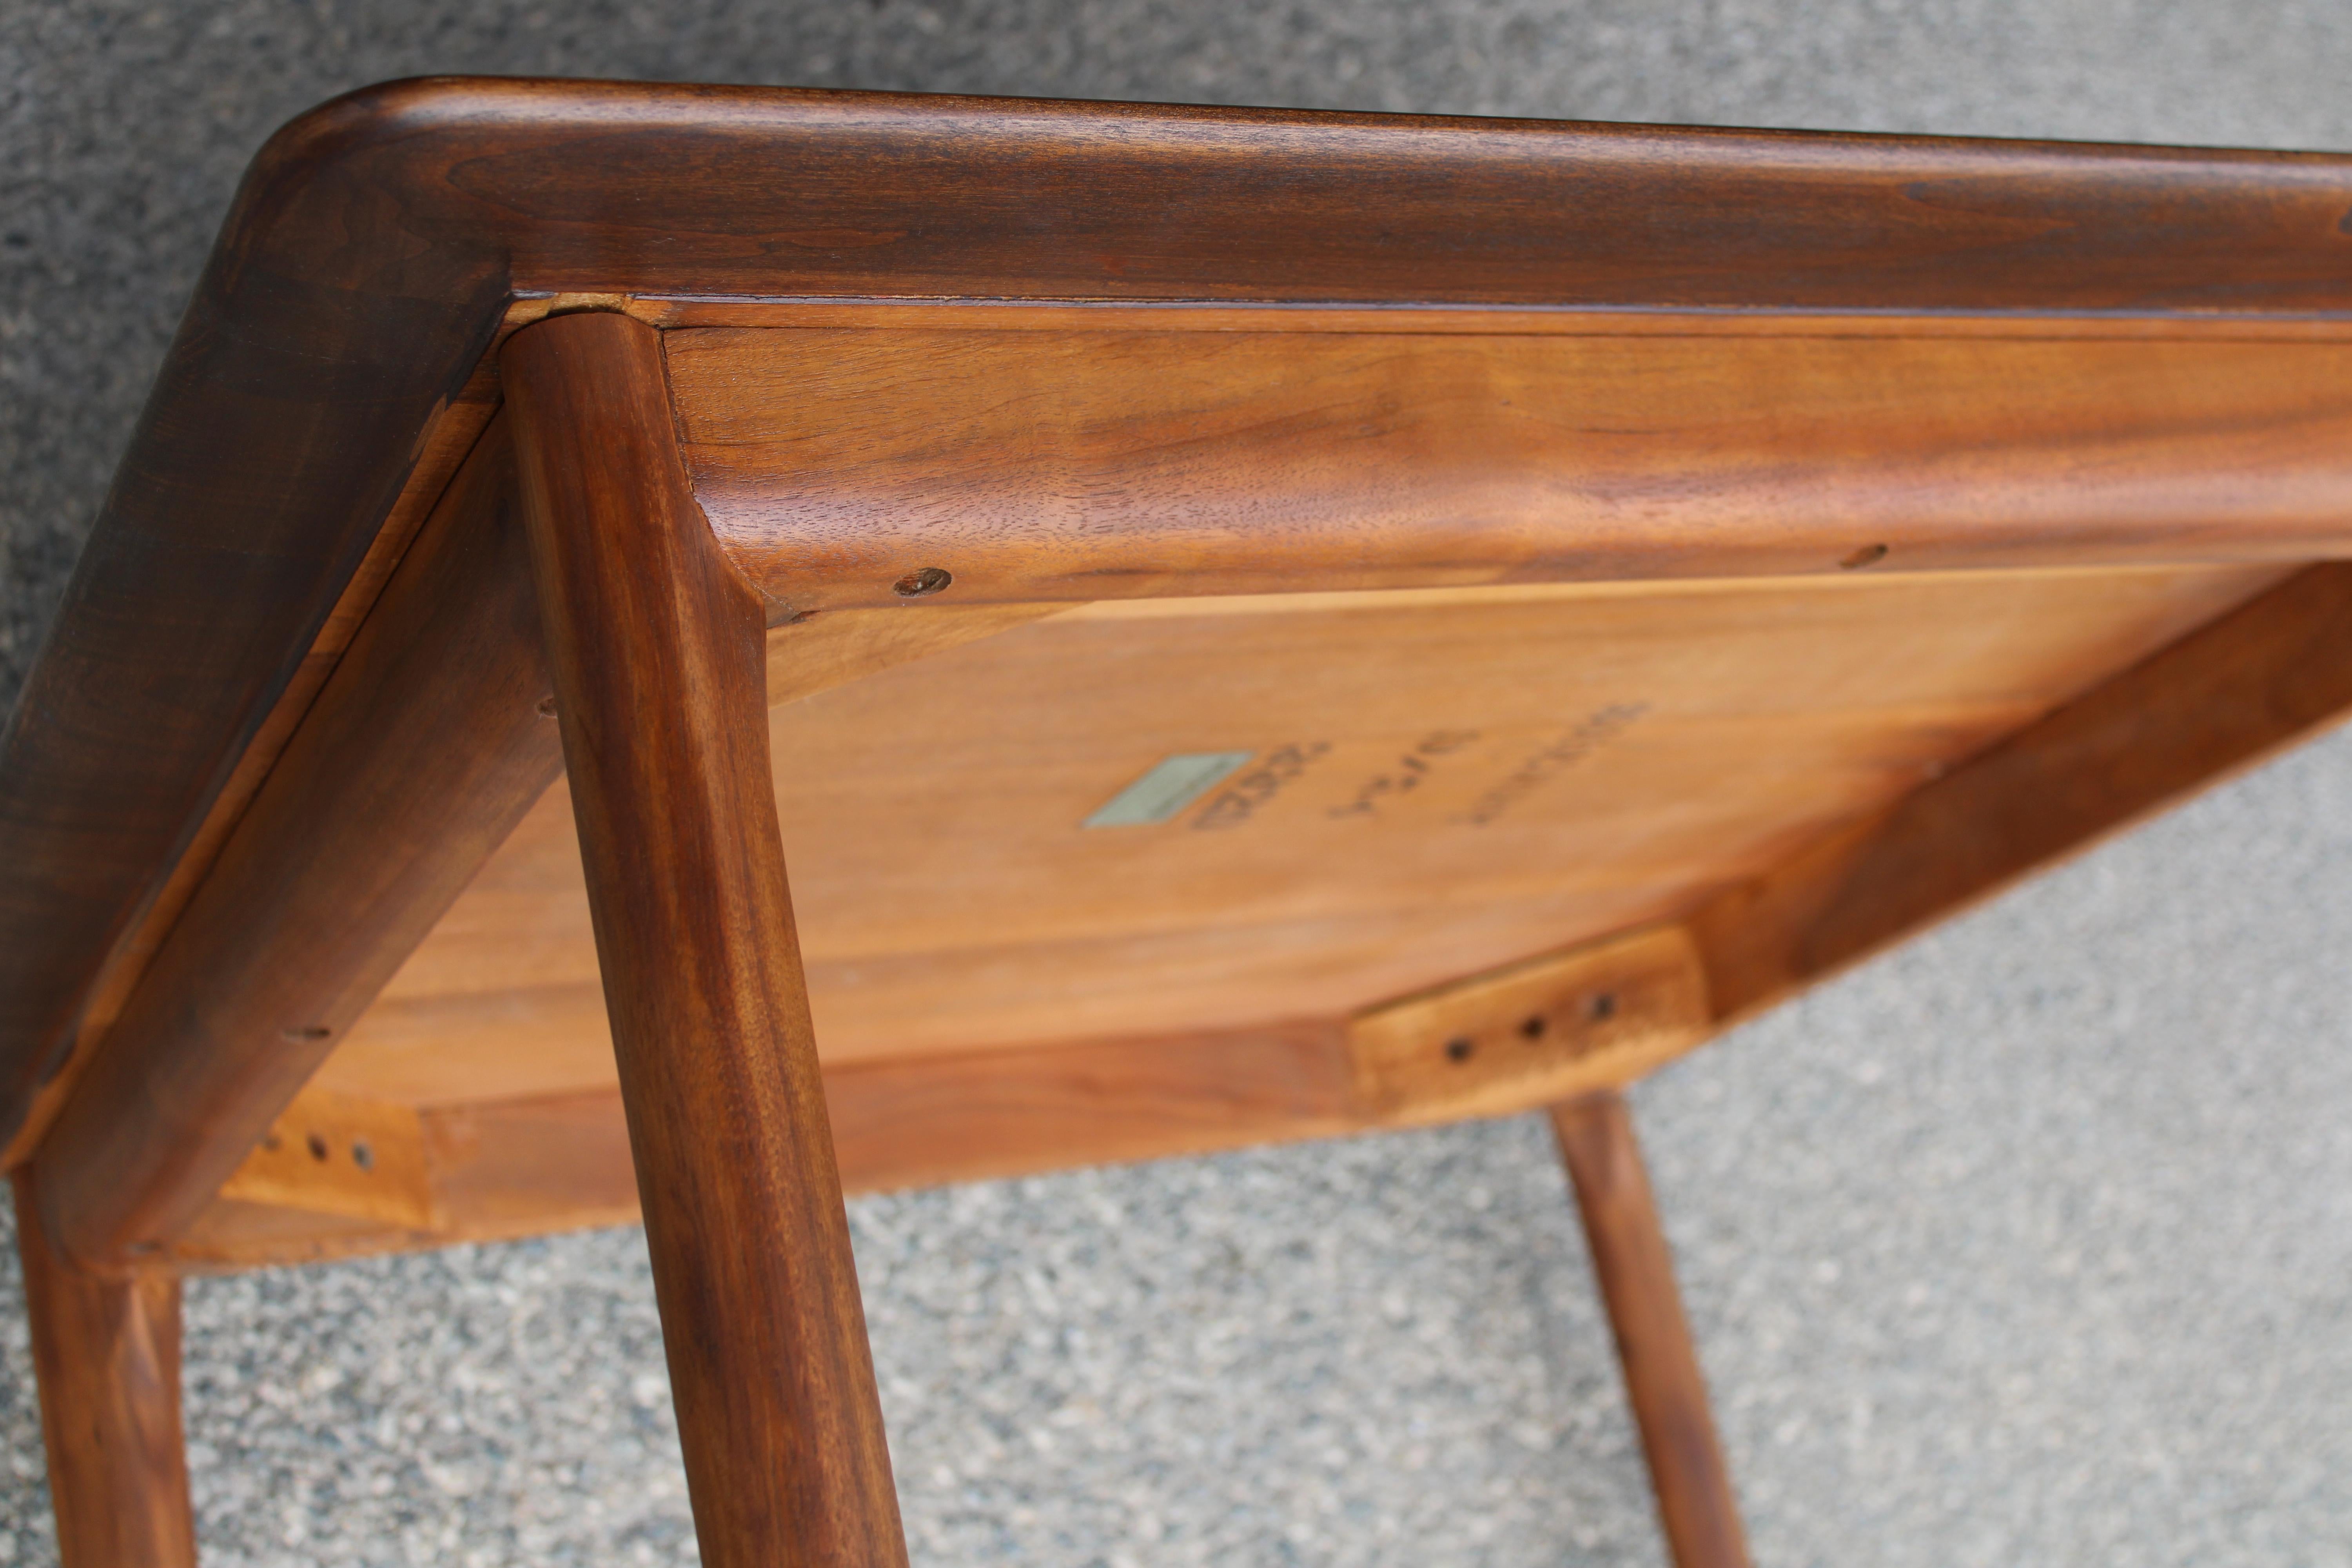 Widdicomb Table Designed by T.H. Robsjohn - Gibbings For Sale 1